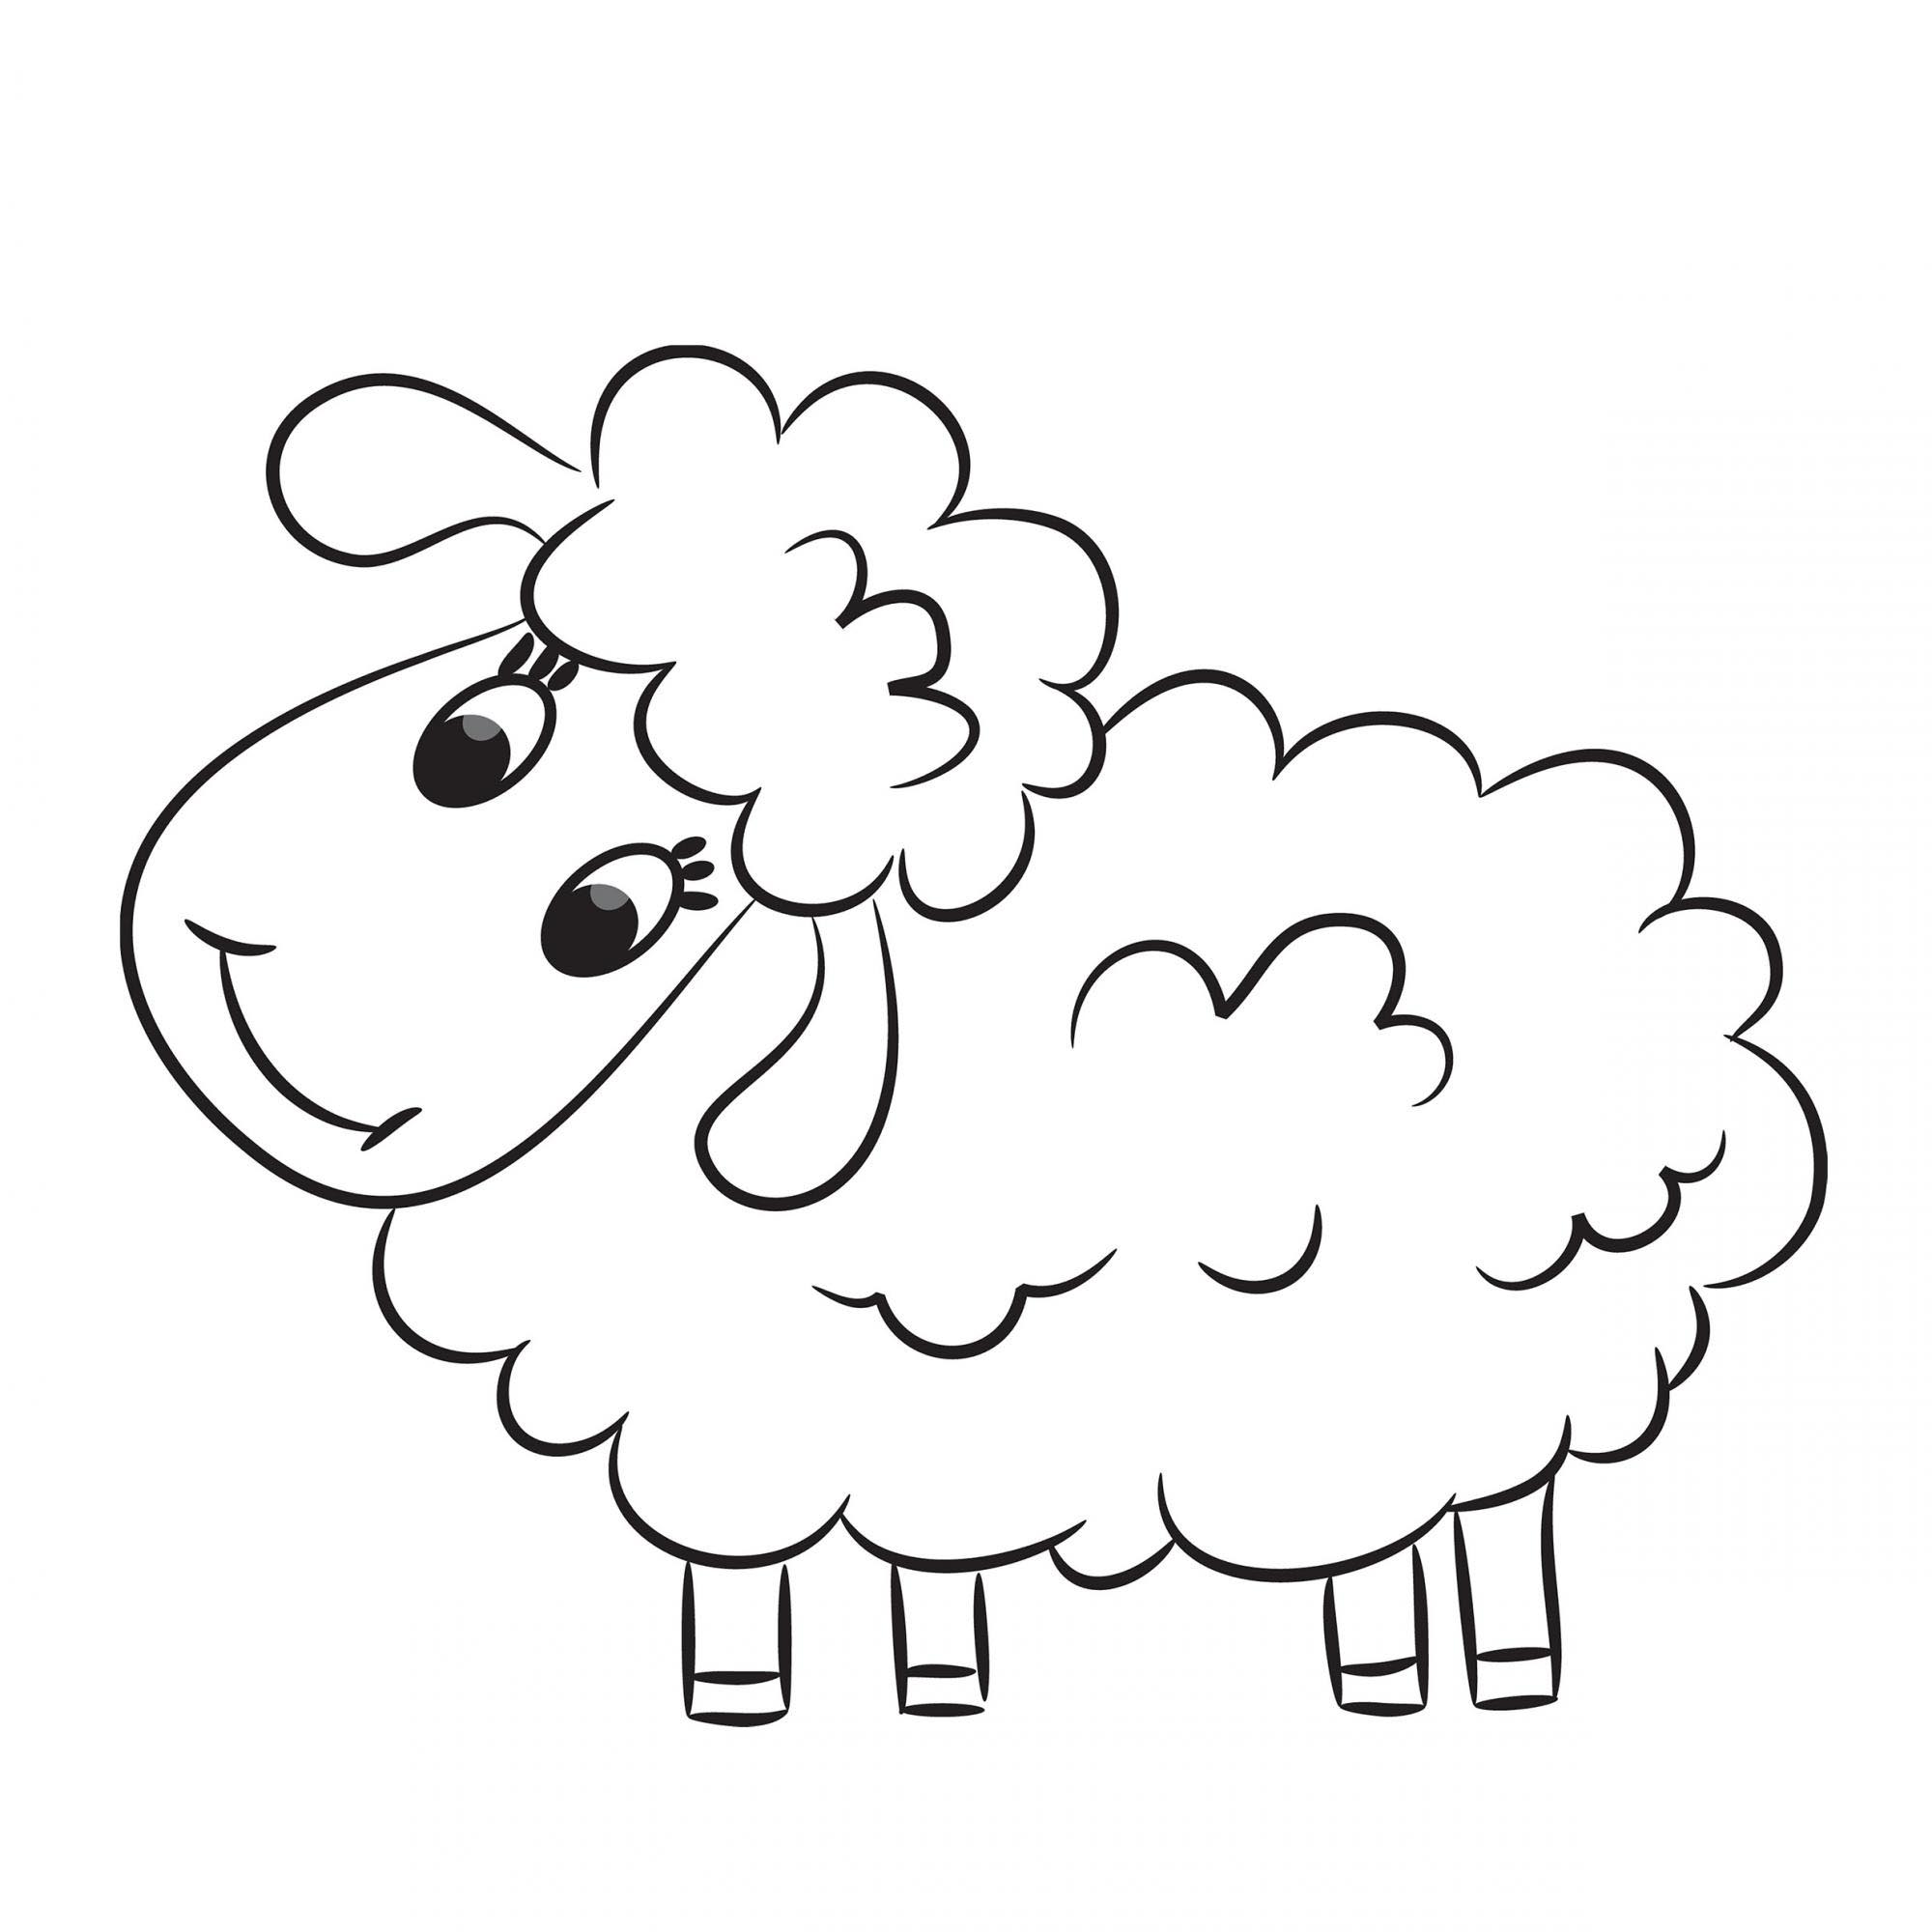 Tổng hợp các bức tranh tô màu con cừu cho bé